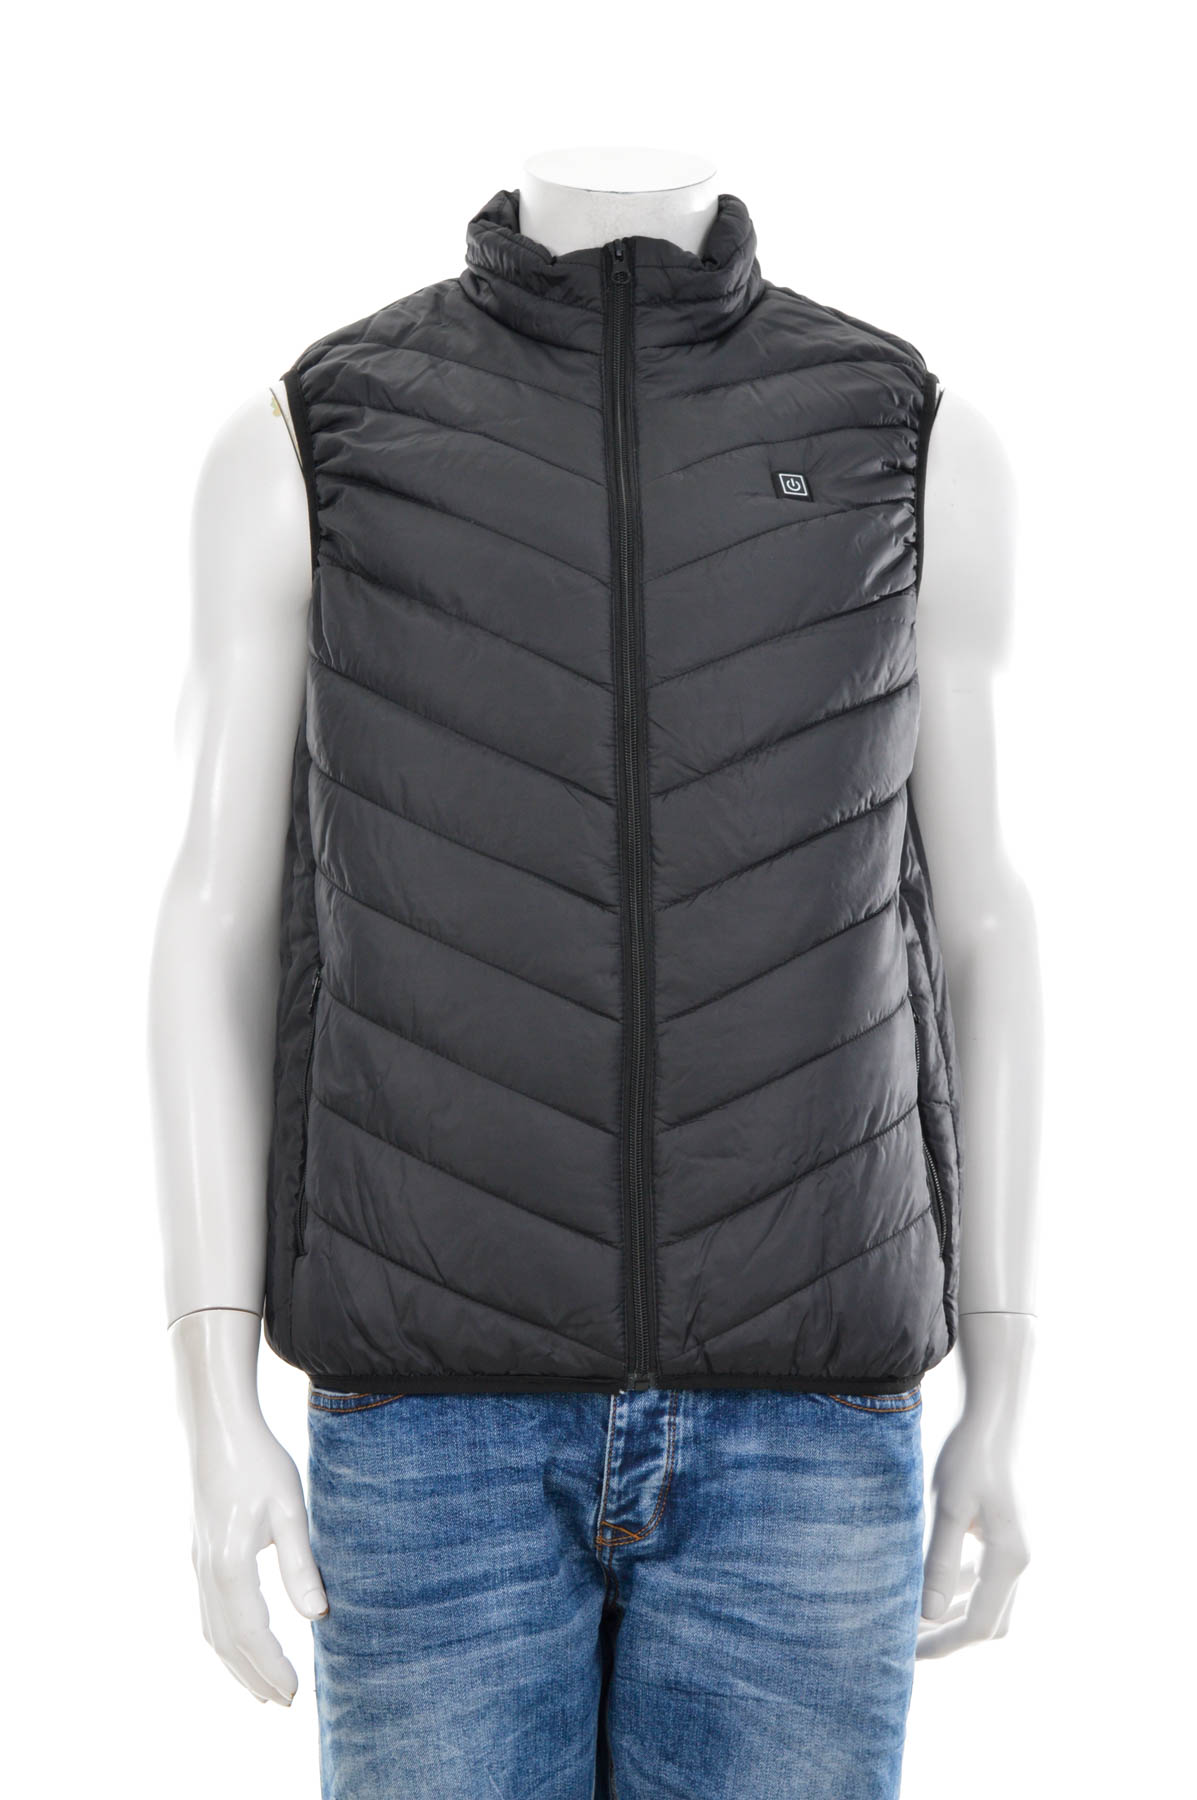 Men's vest with heater - 0